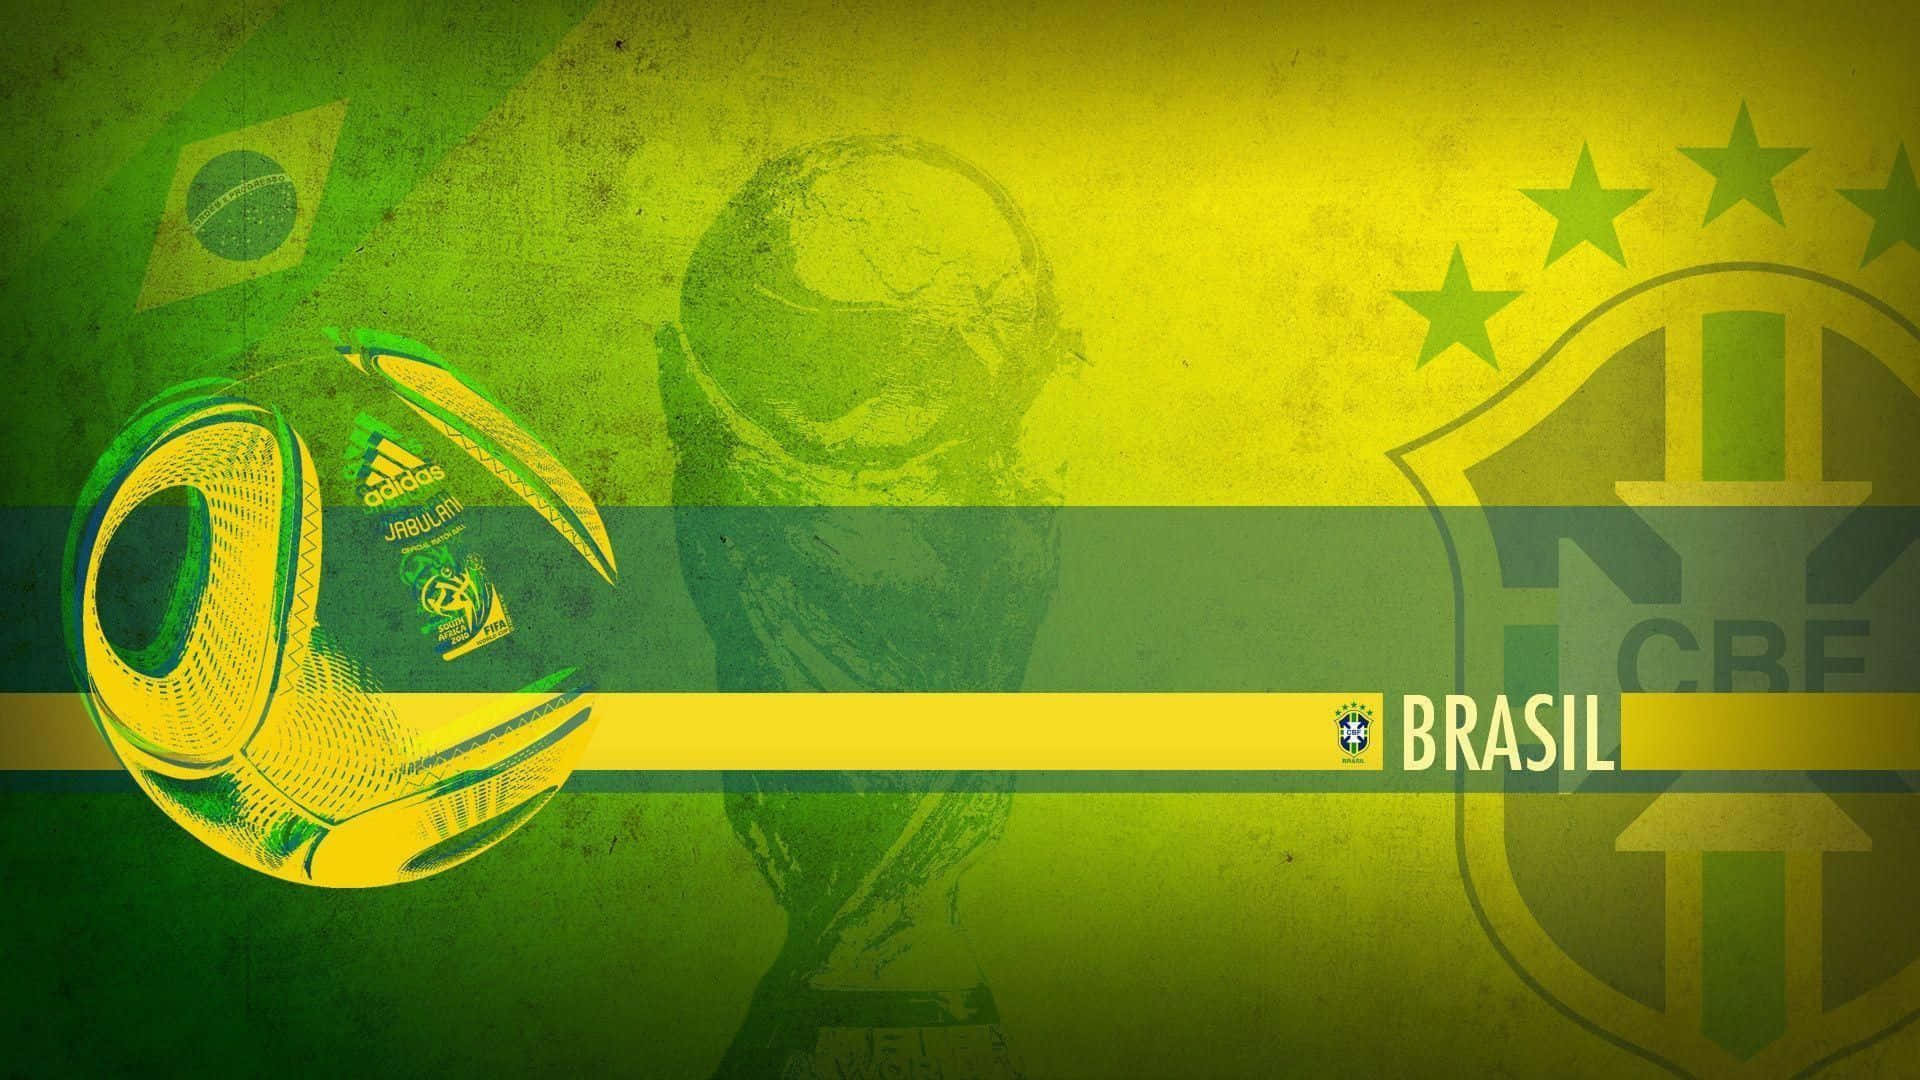 Brasilien1920 X 1080 Baggrund.